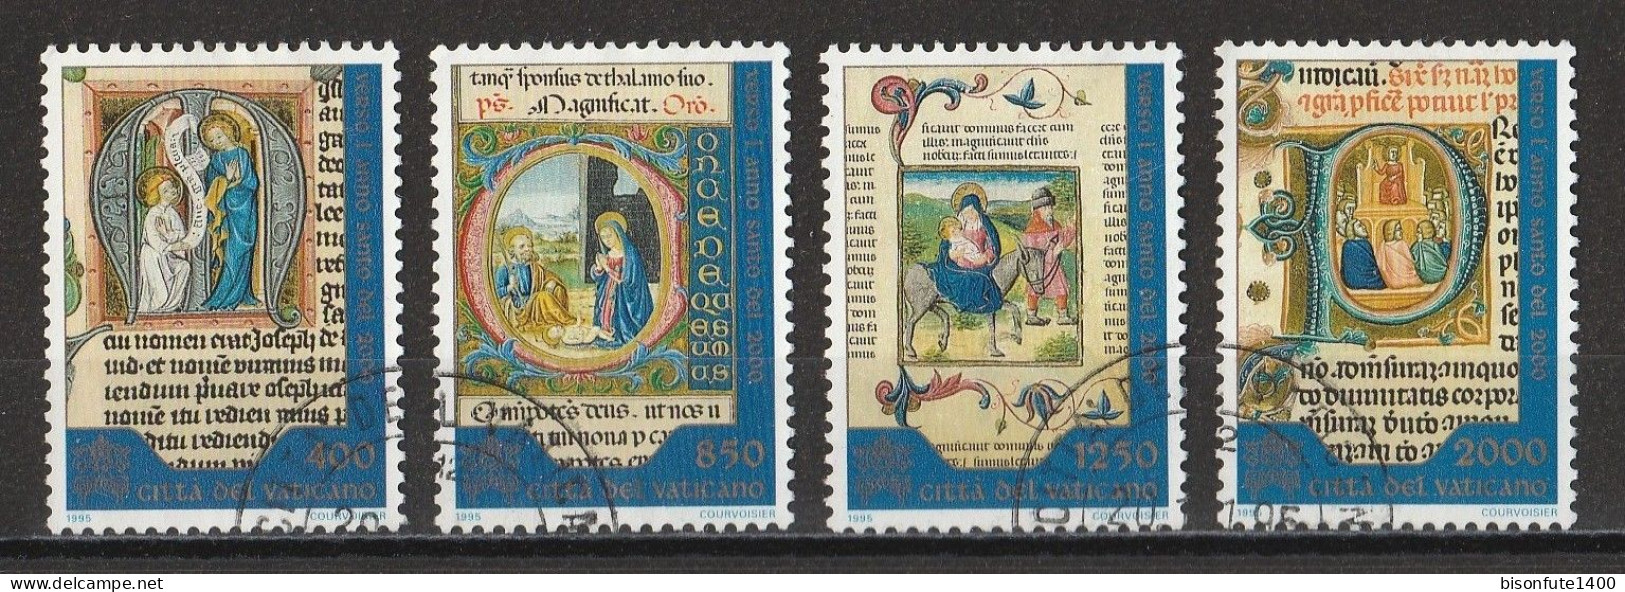 Vatican 1995 : Timbres Yvert & Tellier N° 1025 - 1026 - 1027 Et 1028 Oblitérés - Oblitérés